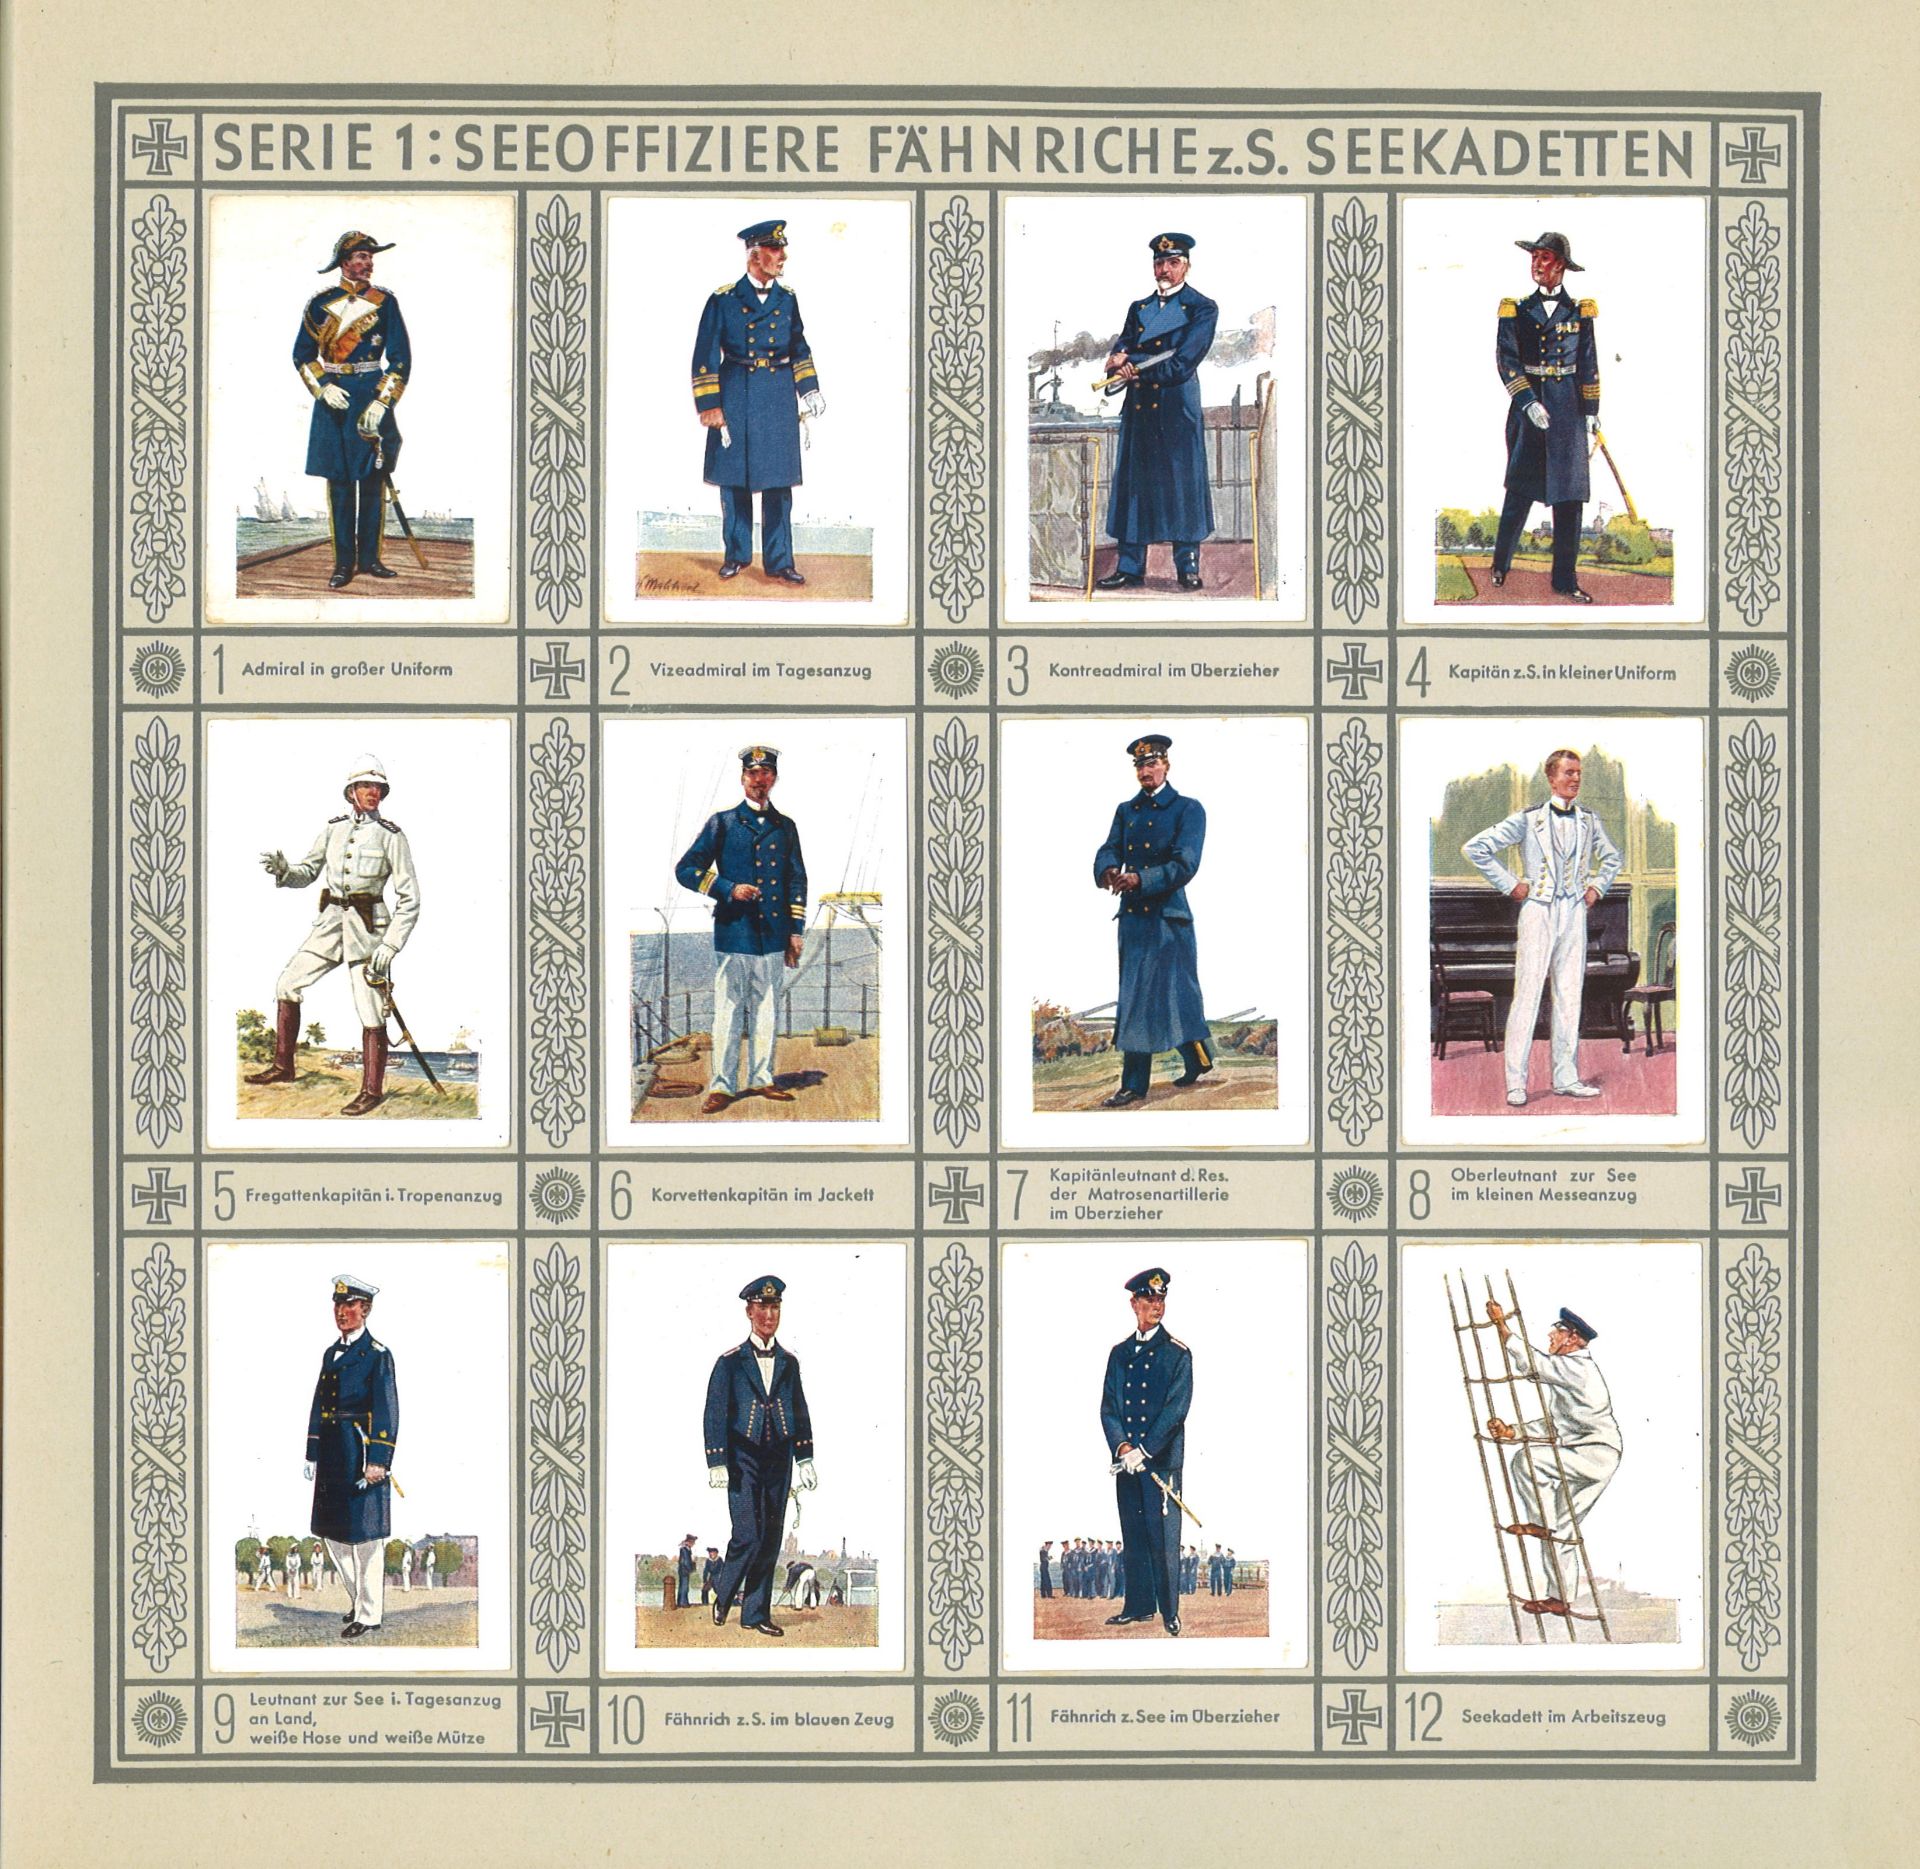 Sammelbilderalbum "Uniformen der Marine und Schutztruppen", Zigarettenfabrik, Waldorf - Astoria, - Image 3 of 3